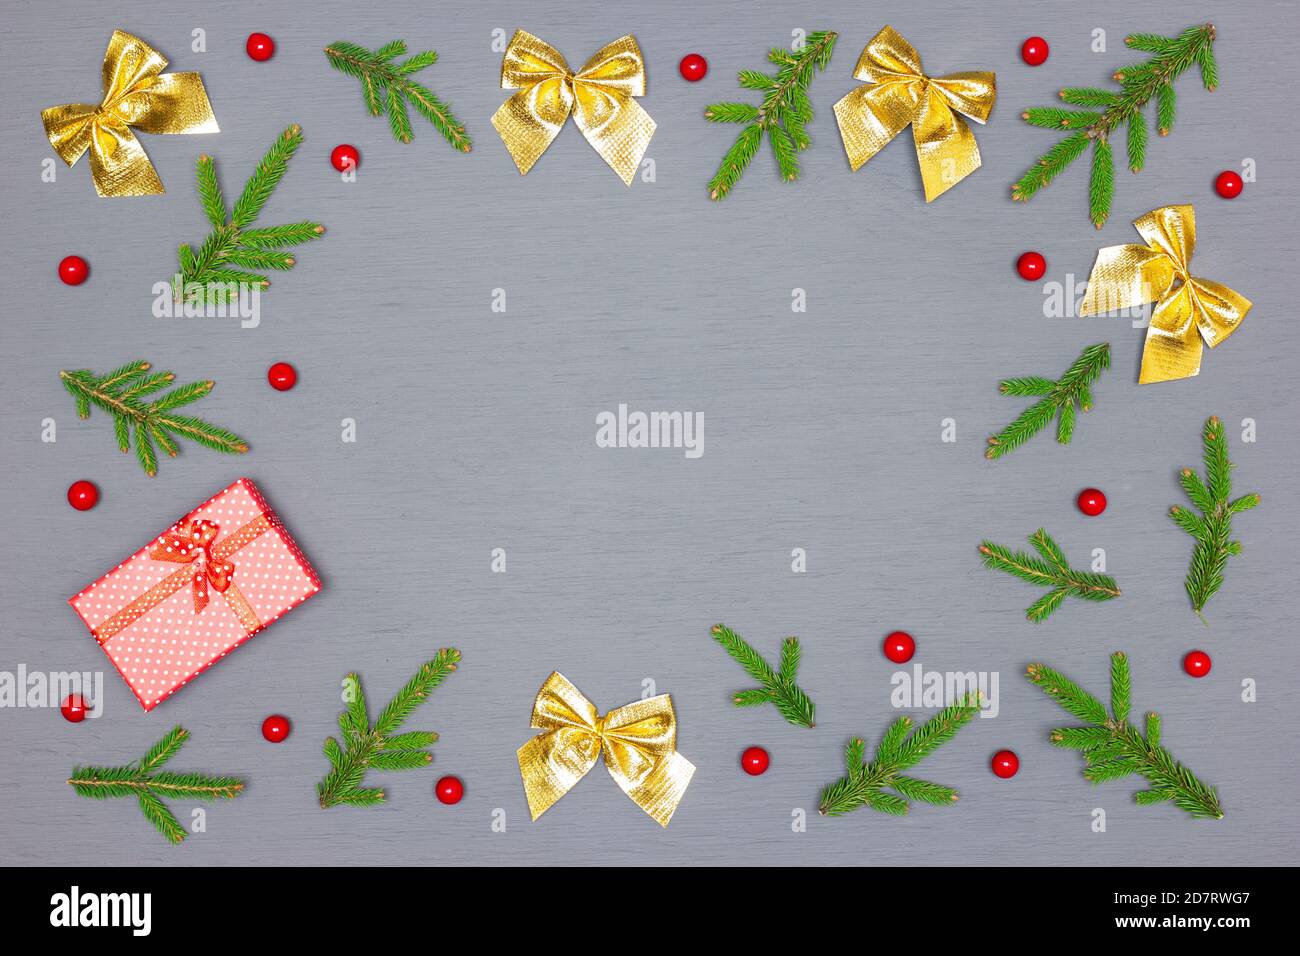 Cadre de branches d'arbre de Noël vertes et décorations de Noël avec boîte cadeau rouge sur bois peint gris. Vue de dessus, plan d'appartement. Espace vide pour le texte Banque D'Images